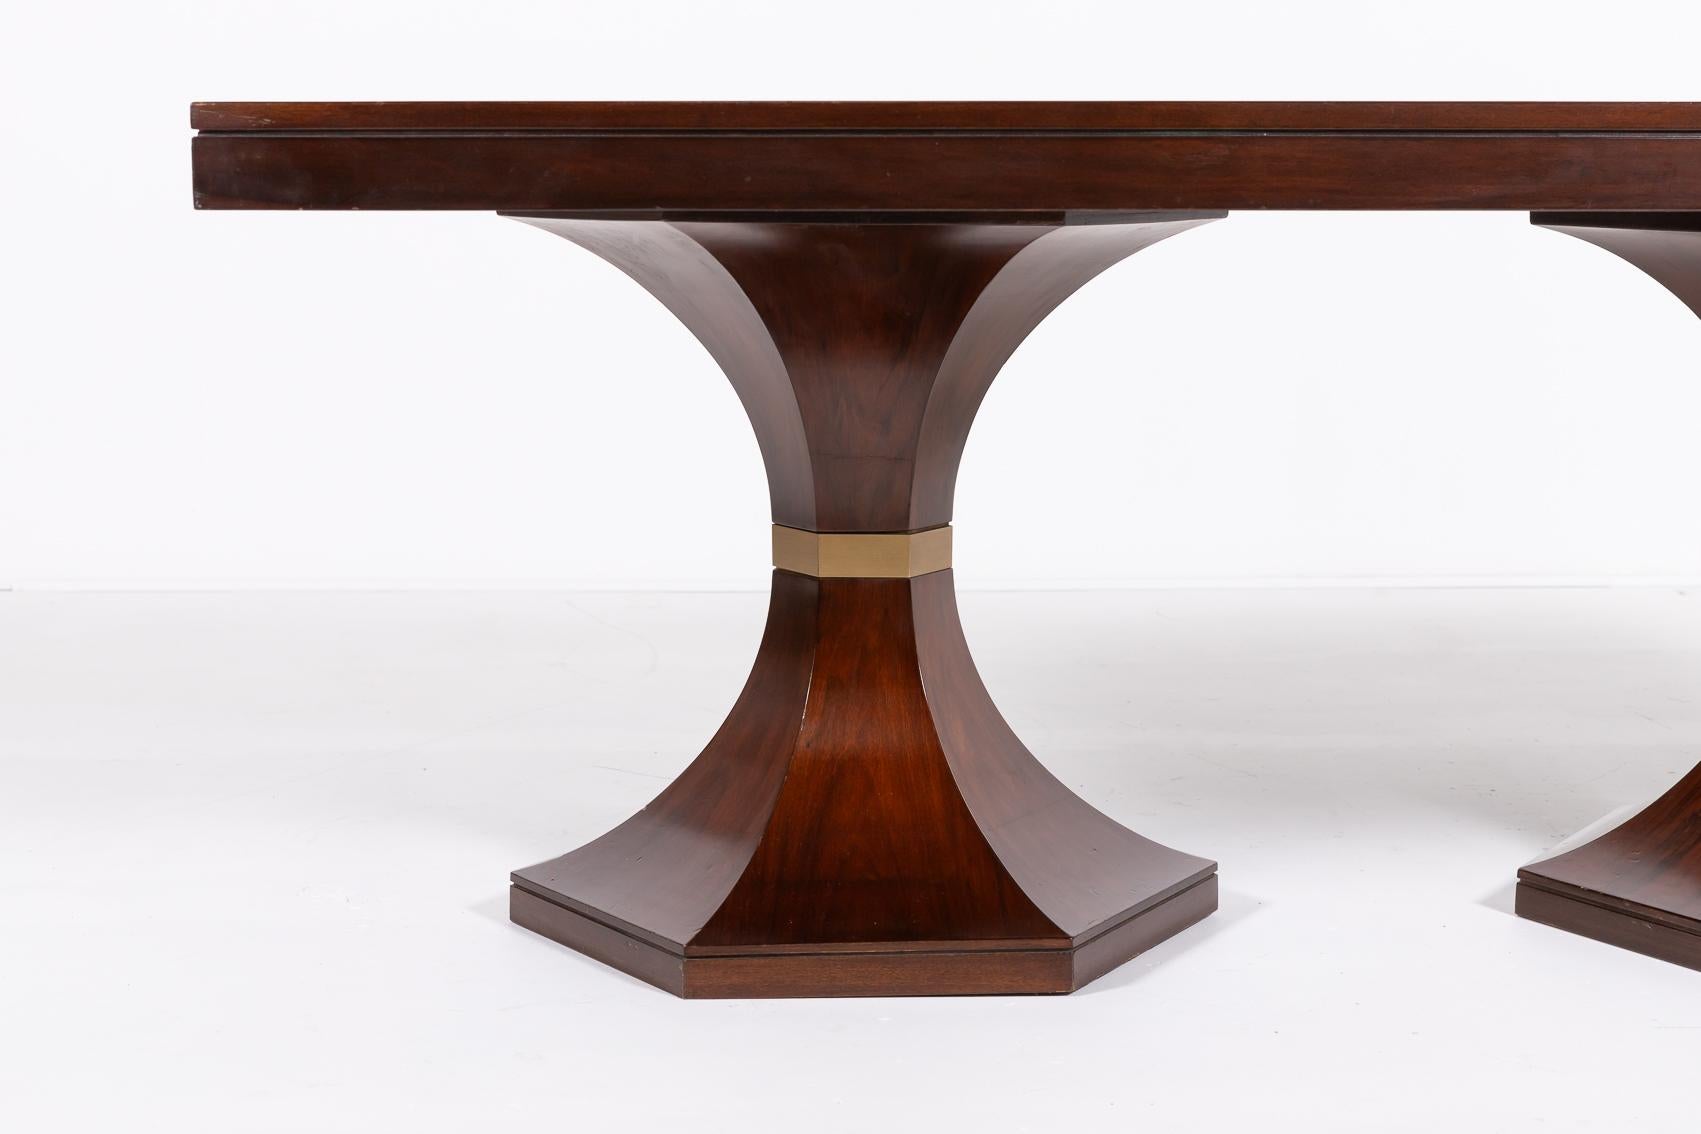 Italienischer rechteckiger Tisch aus der Jahrhundertmitte von Carlo de Carli, 1960er Jahre. Es ist nussbaumfarben lackiert und hat in der Mitte der Beine Zierelemente aus Messing.

Bedingung
Gut, Gebrauchsspuren

Abmessungen
Tiefe: 100 cm
Breite: